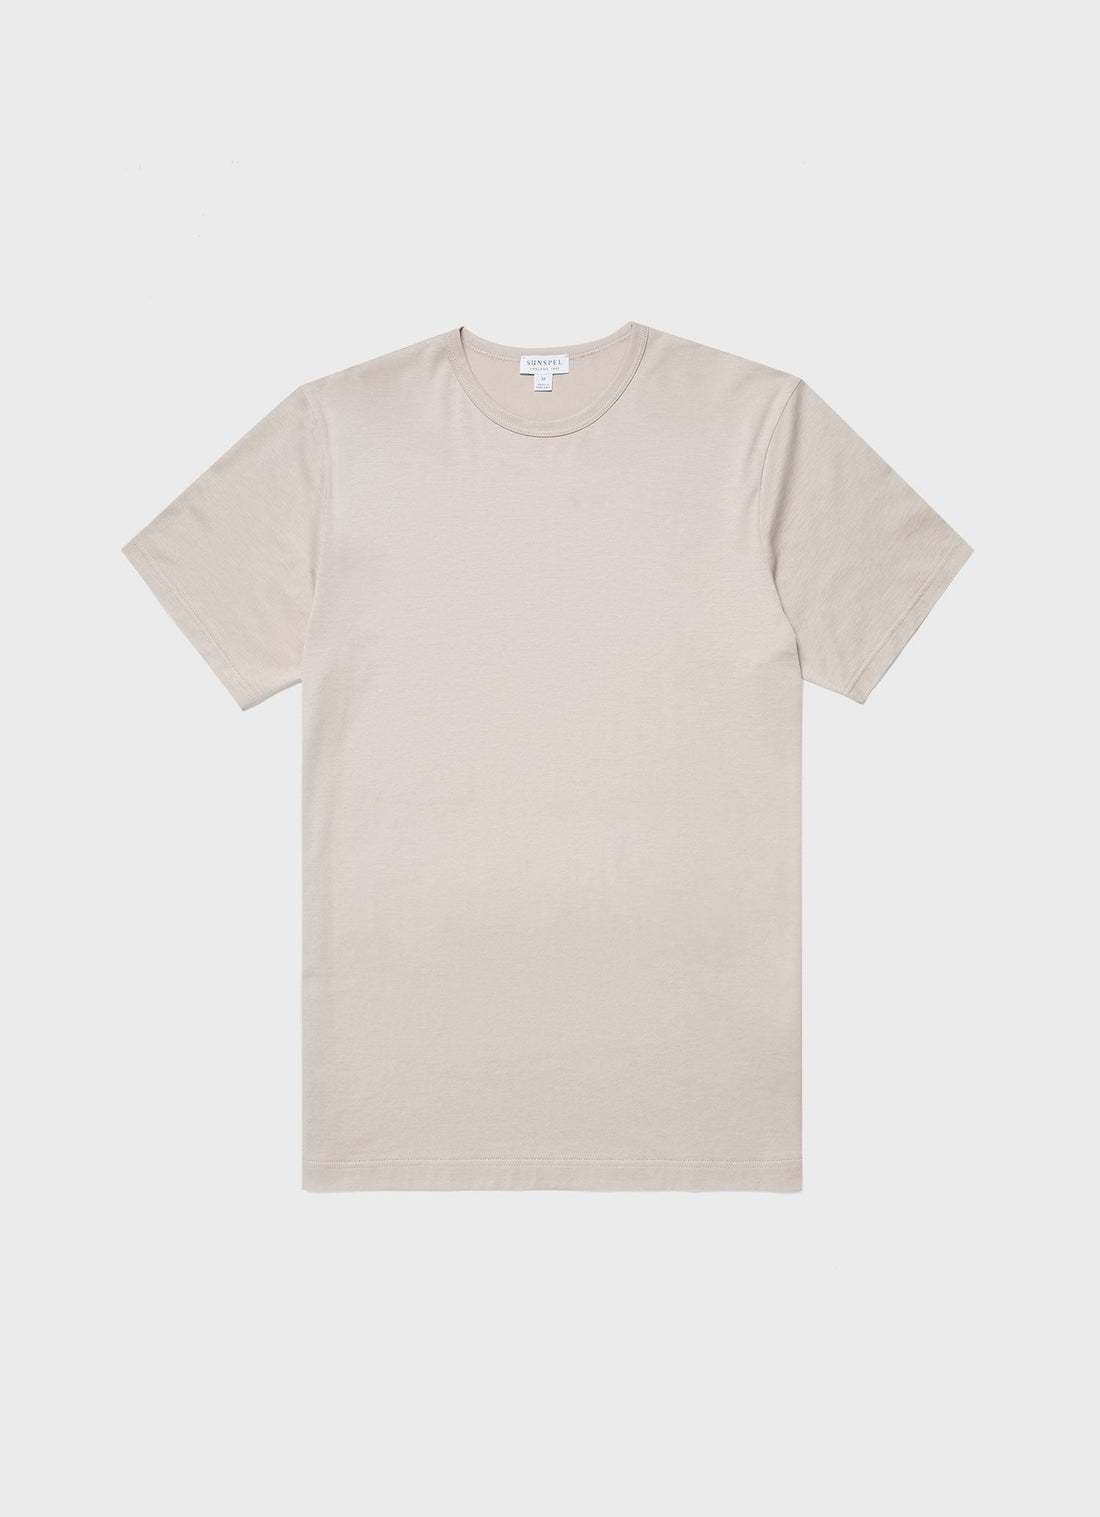 Men's Classic T-shirt in Light Sand